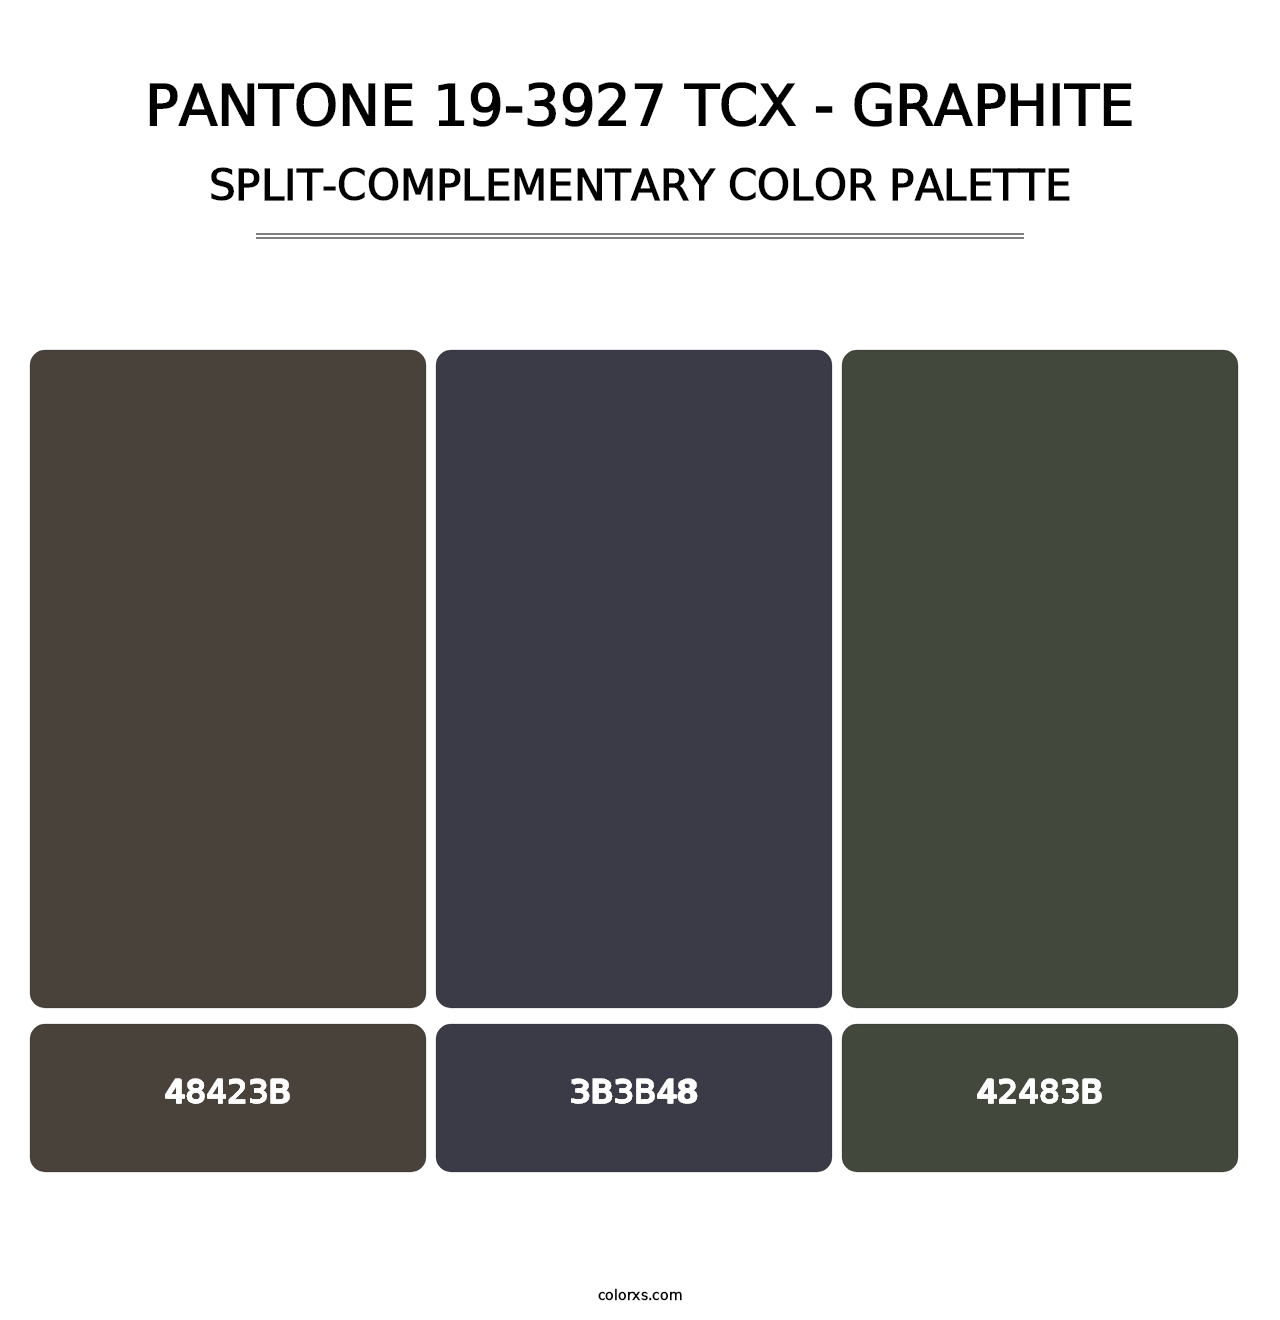 PANTONE 19-3927 TCX - Graphite - Split-Complementary Color Palette